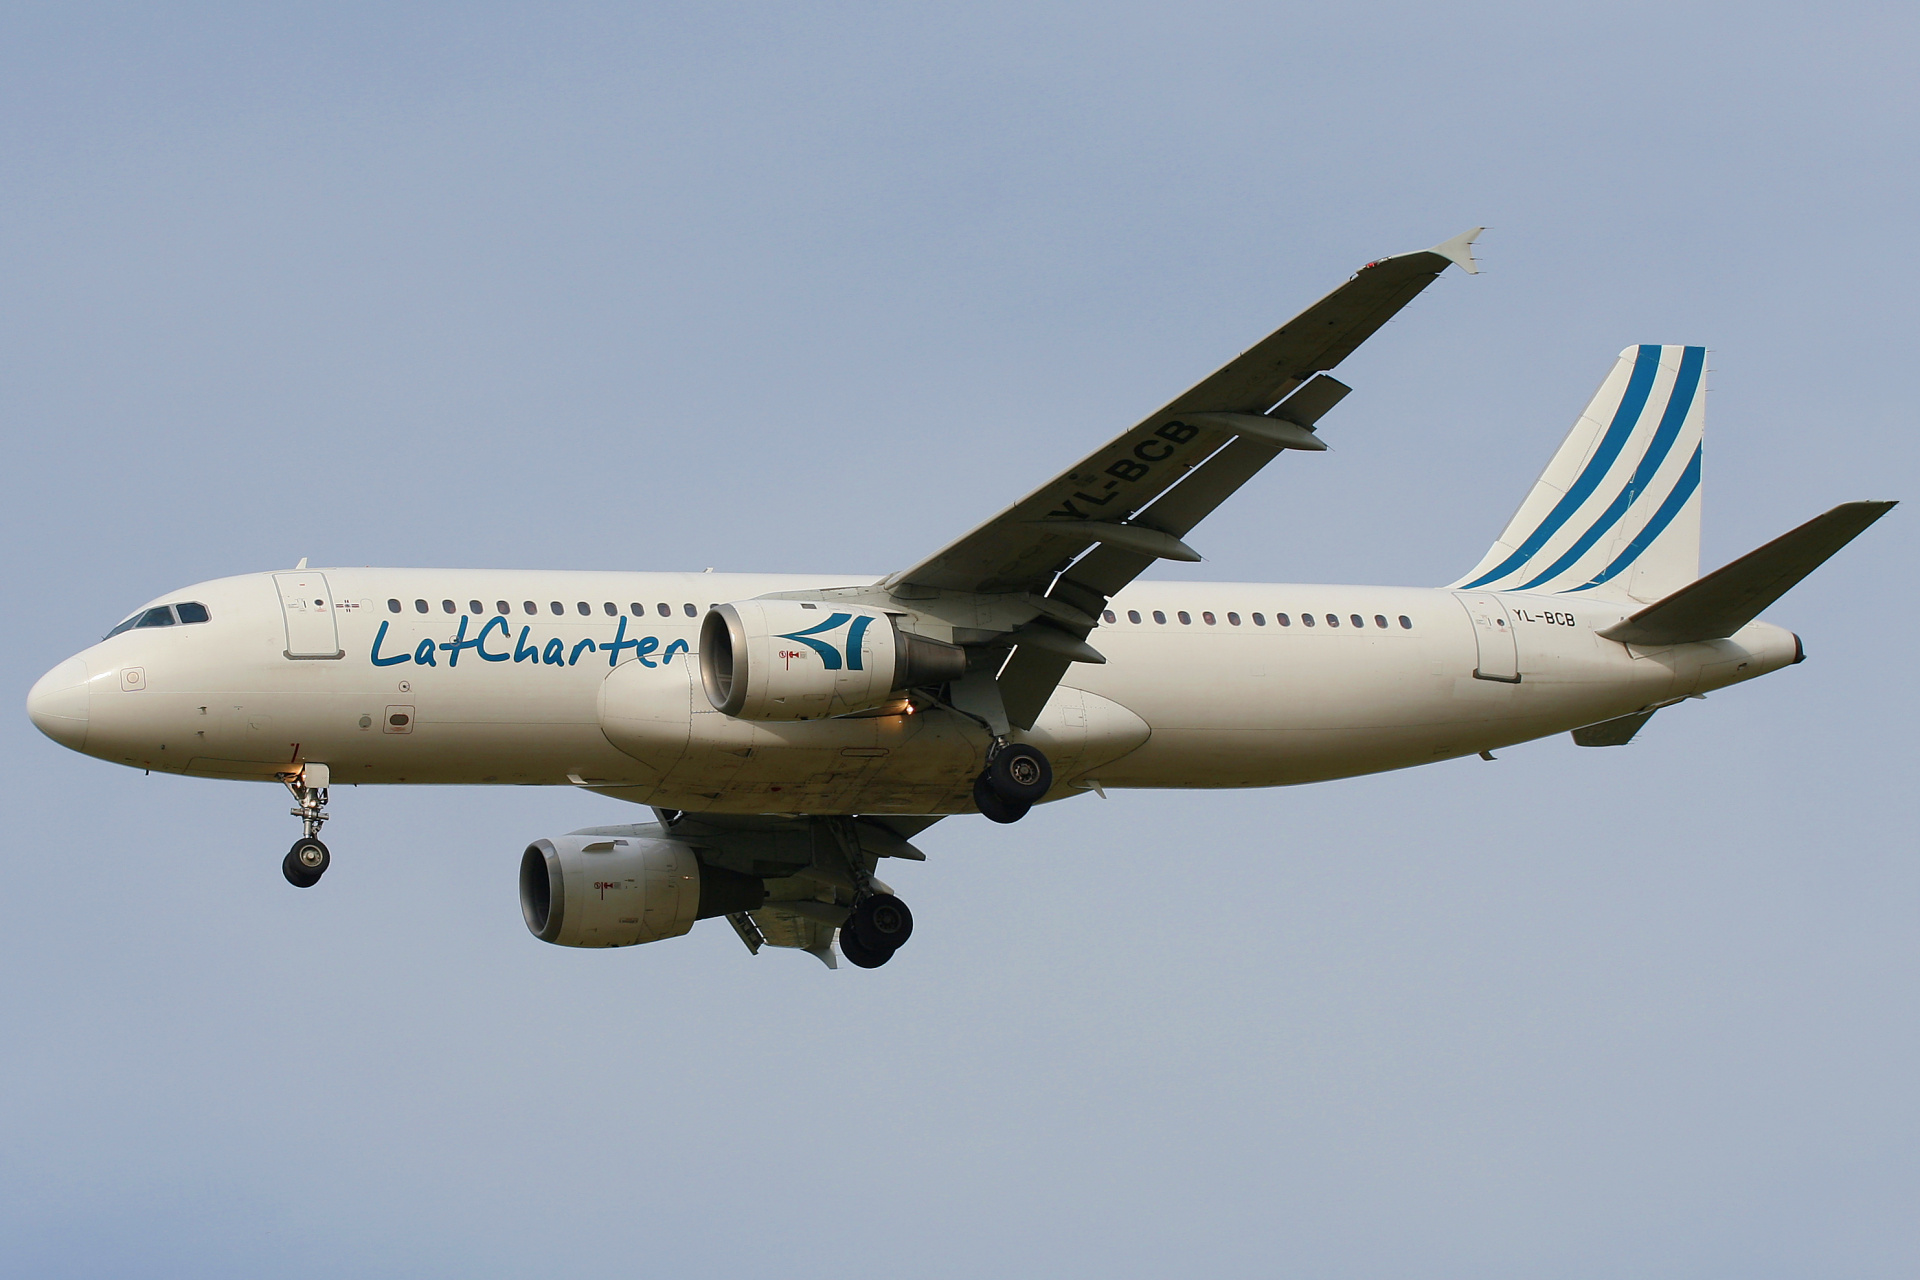 YL-BCB, Lat Charter (Samoloty » Spotting na EPWA » Airbus A320-200)